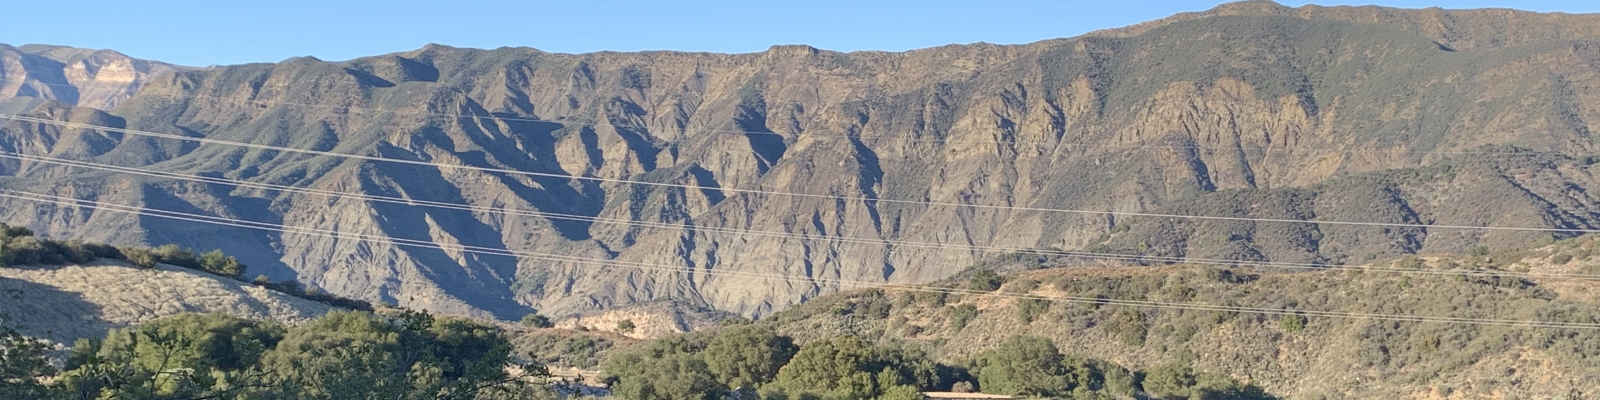 Santa Ynez River Canyon